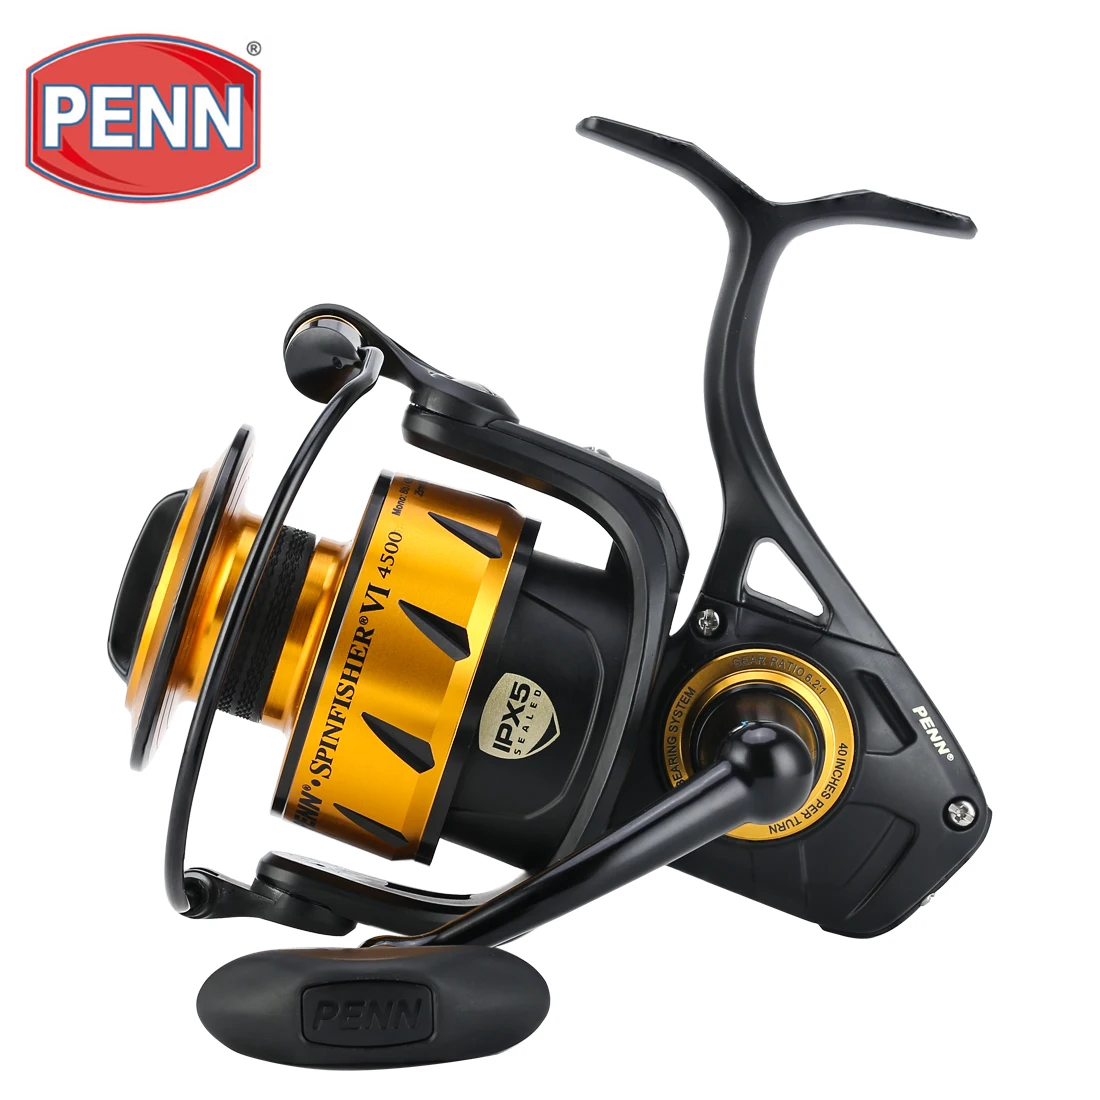 Penn Spinfisher V SSV 9500 Saltwater Spinning Fishing Reel -New